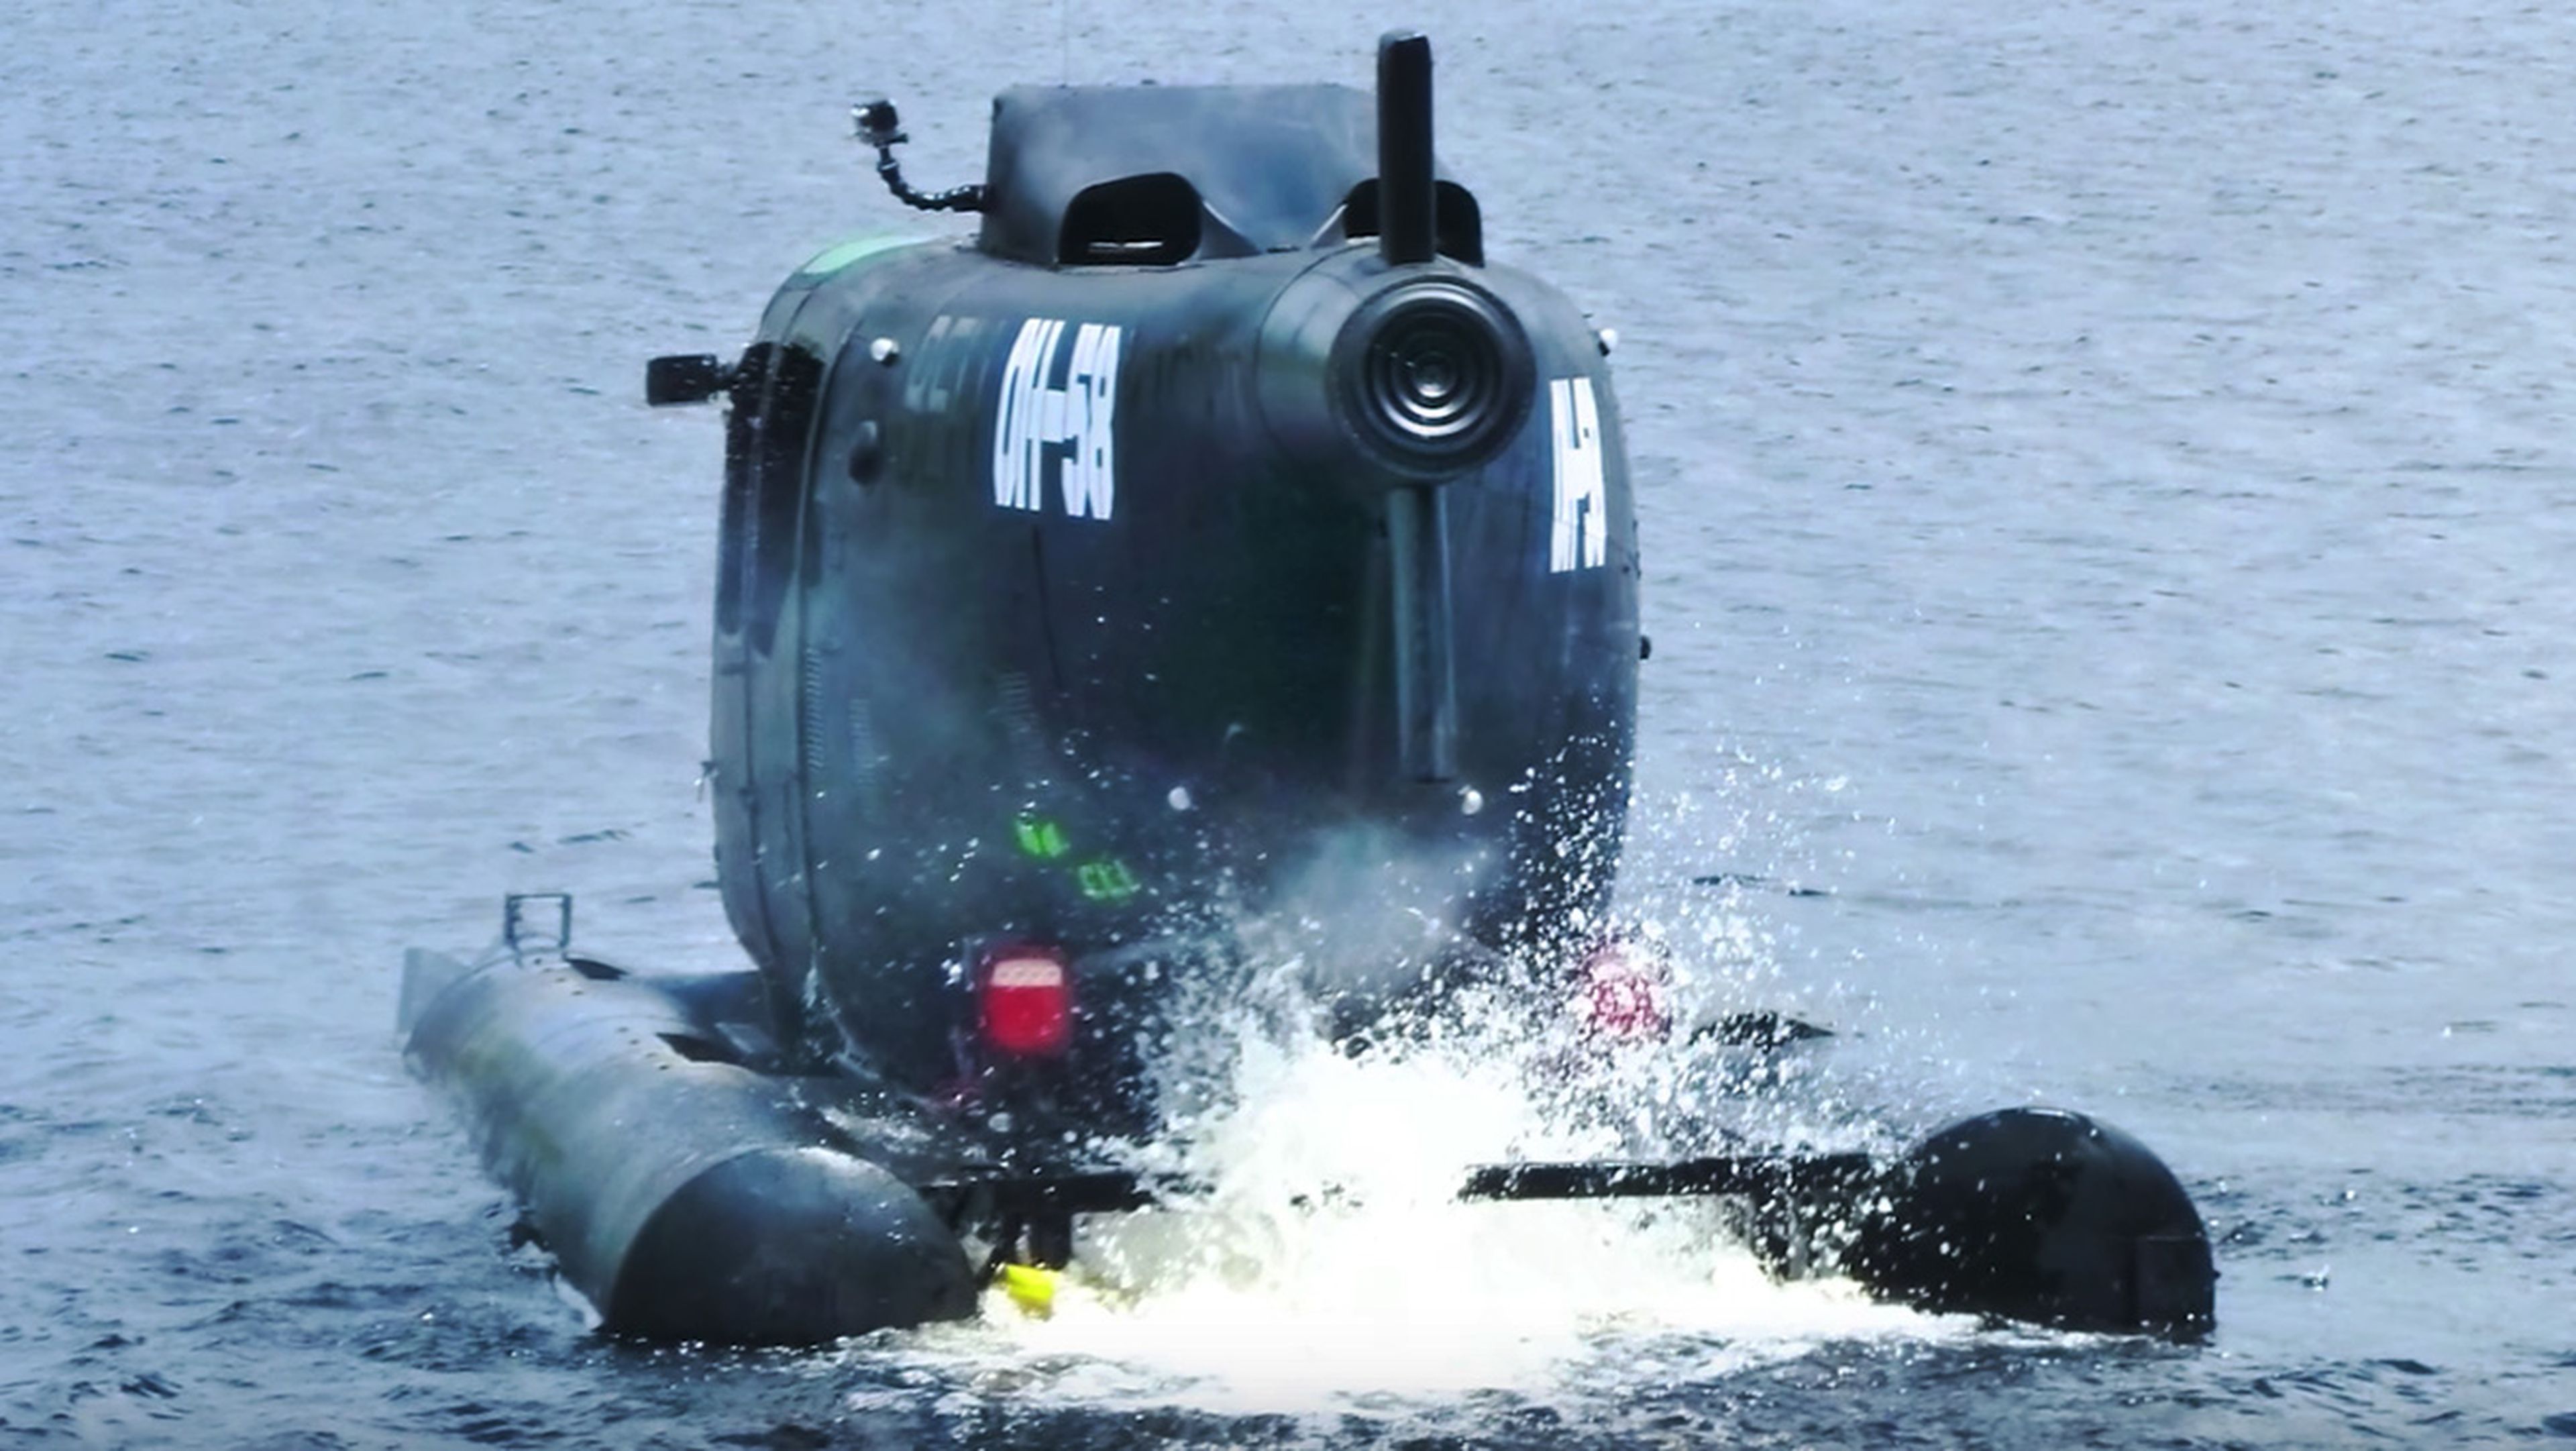 Un tipo ha transformado un helicóptero militar en un coche amfibio